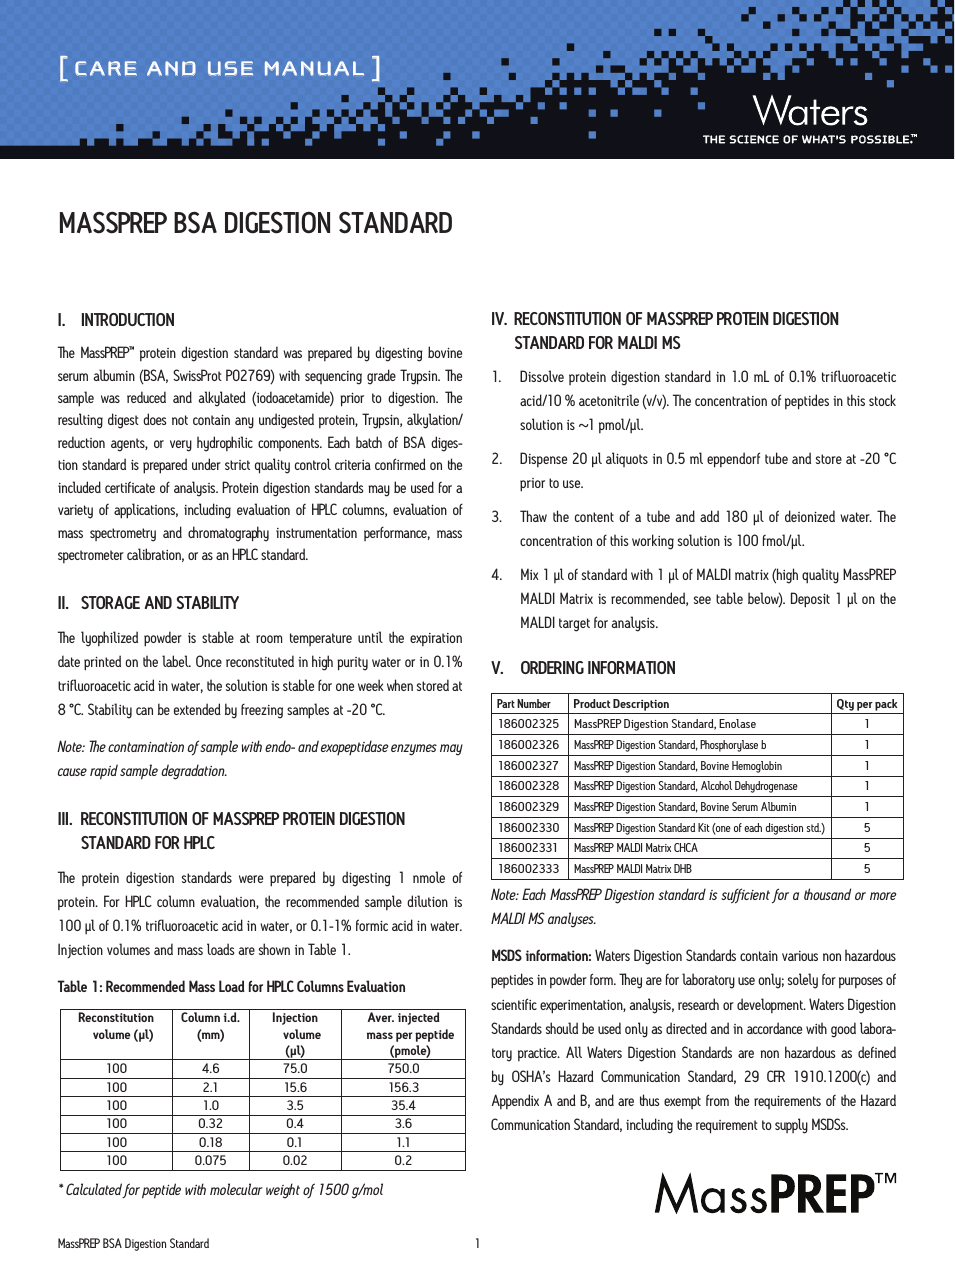 MassPREP BSA Digestion Standard